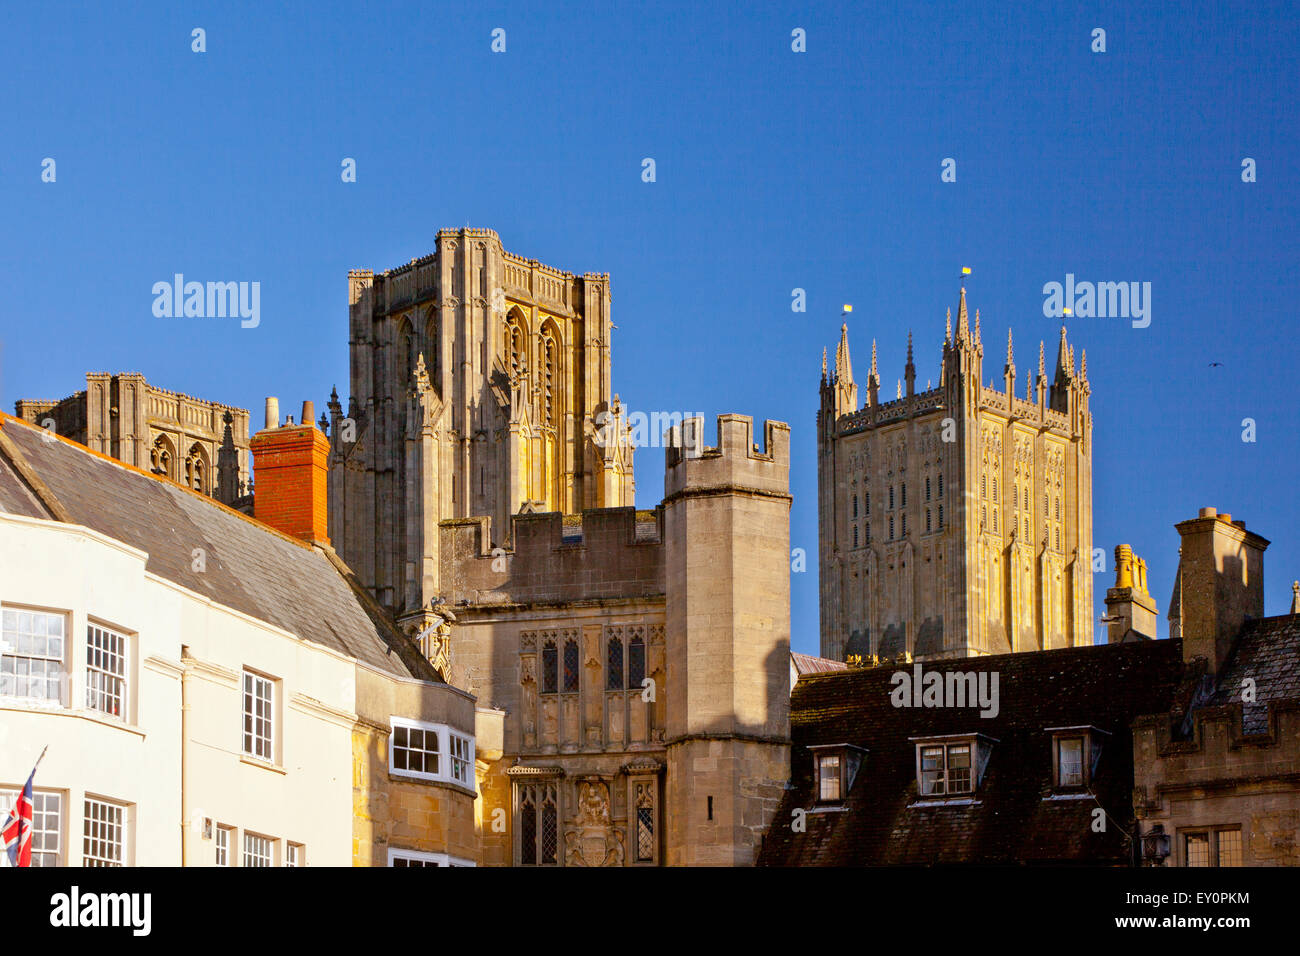 La magnifique cathédrale de Wells vue de la Place du marché, Somerset, England, UK Banque D'Images